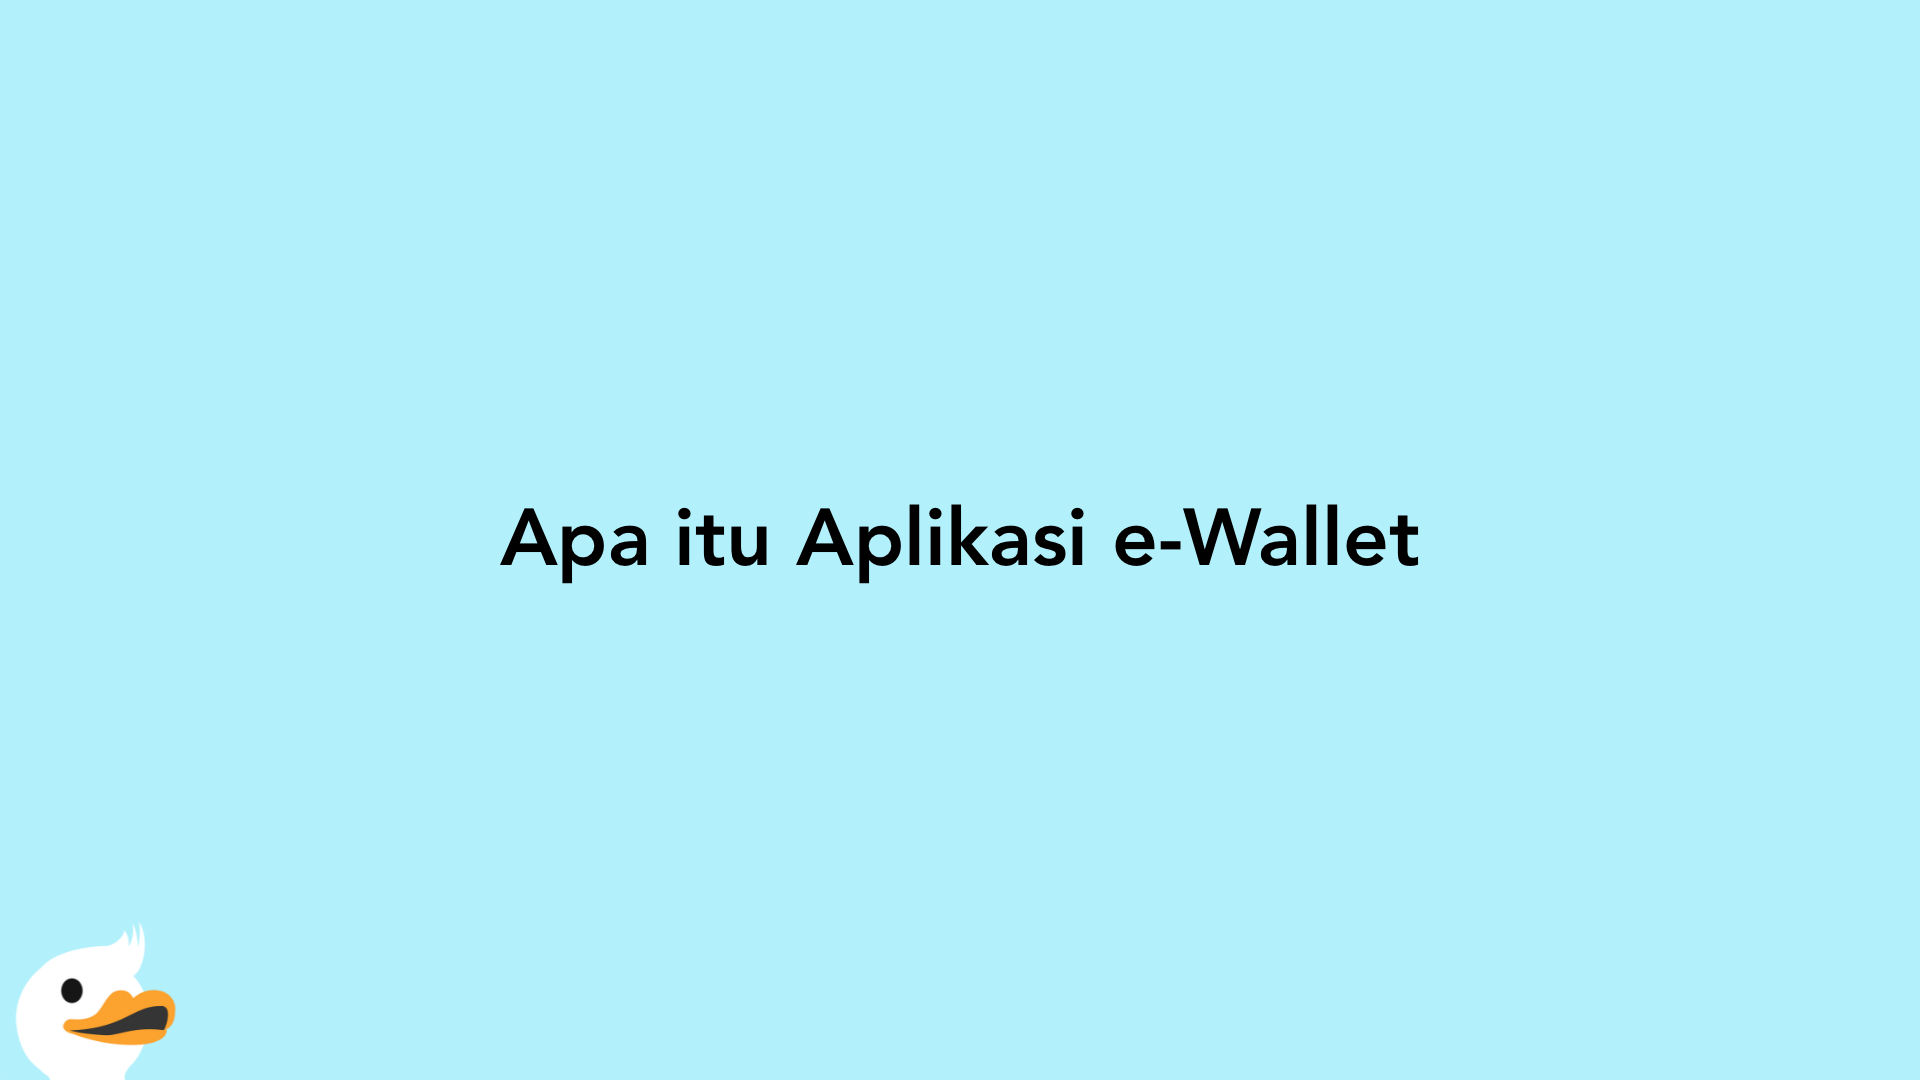 Apa itu Aplikasi e-Wallet